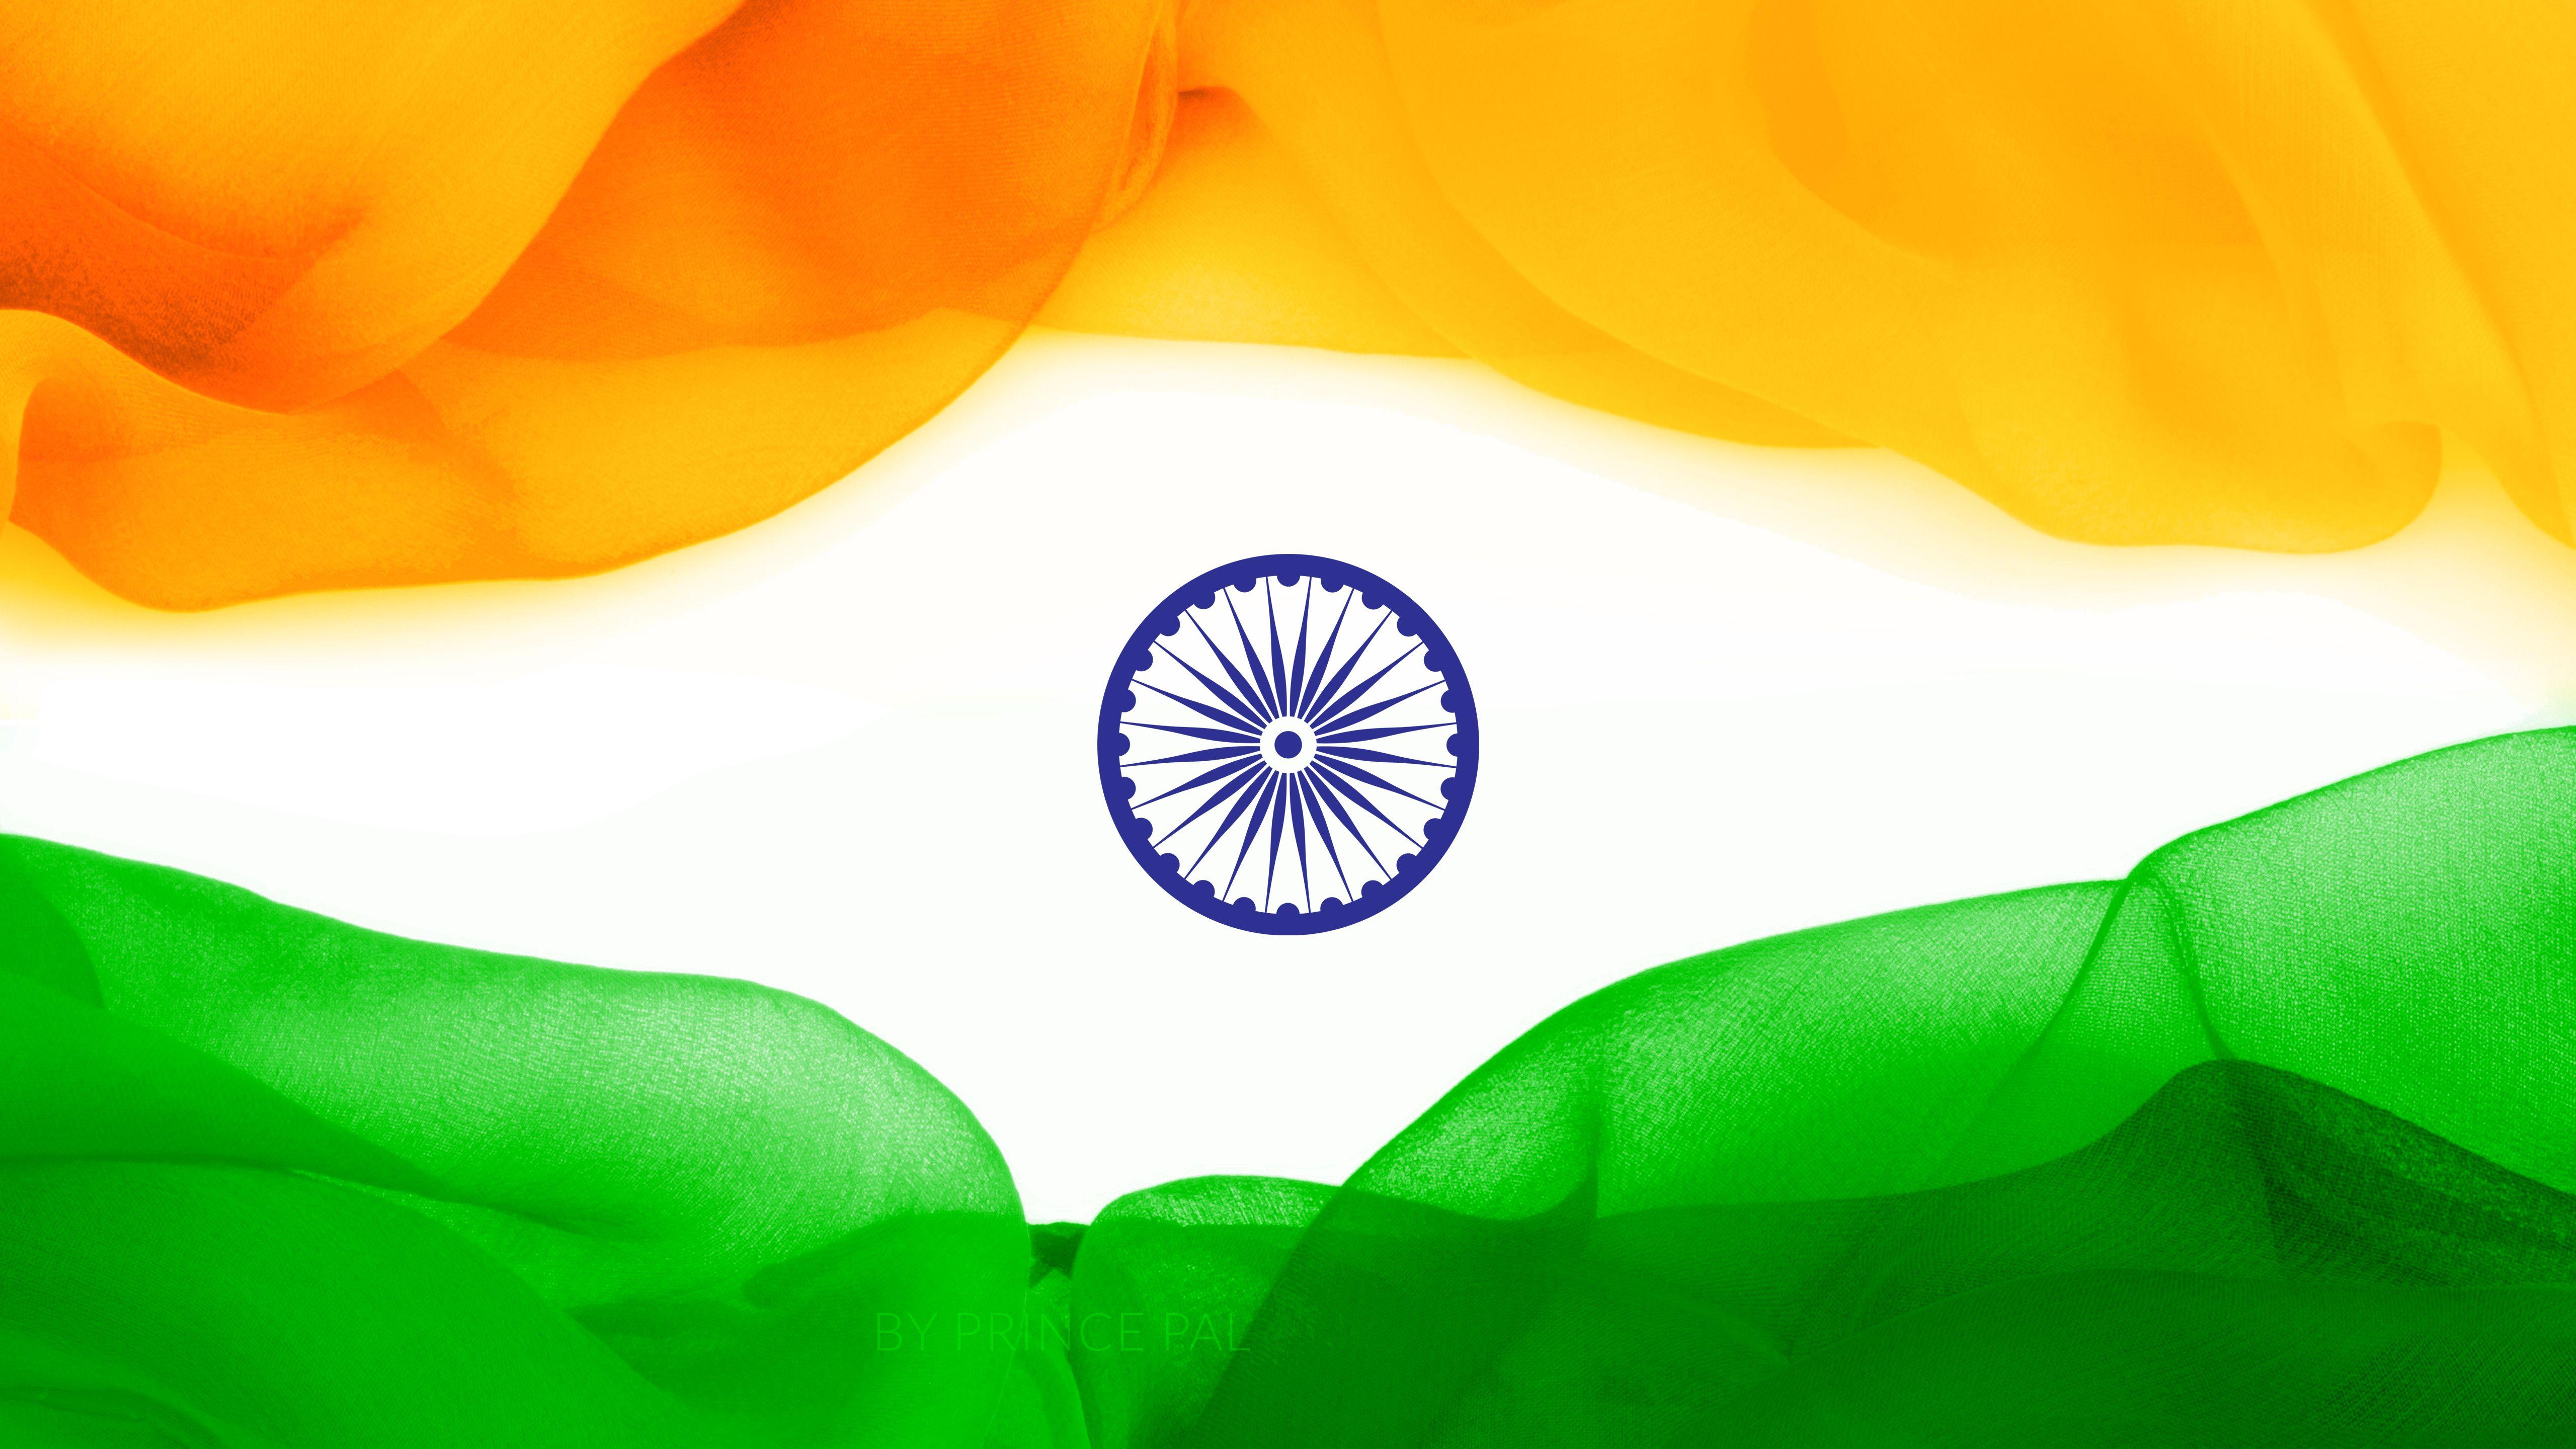 Beautiful Indian Flag (Tiranga) Wallpaper Independence Day!